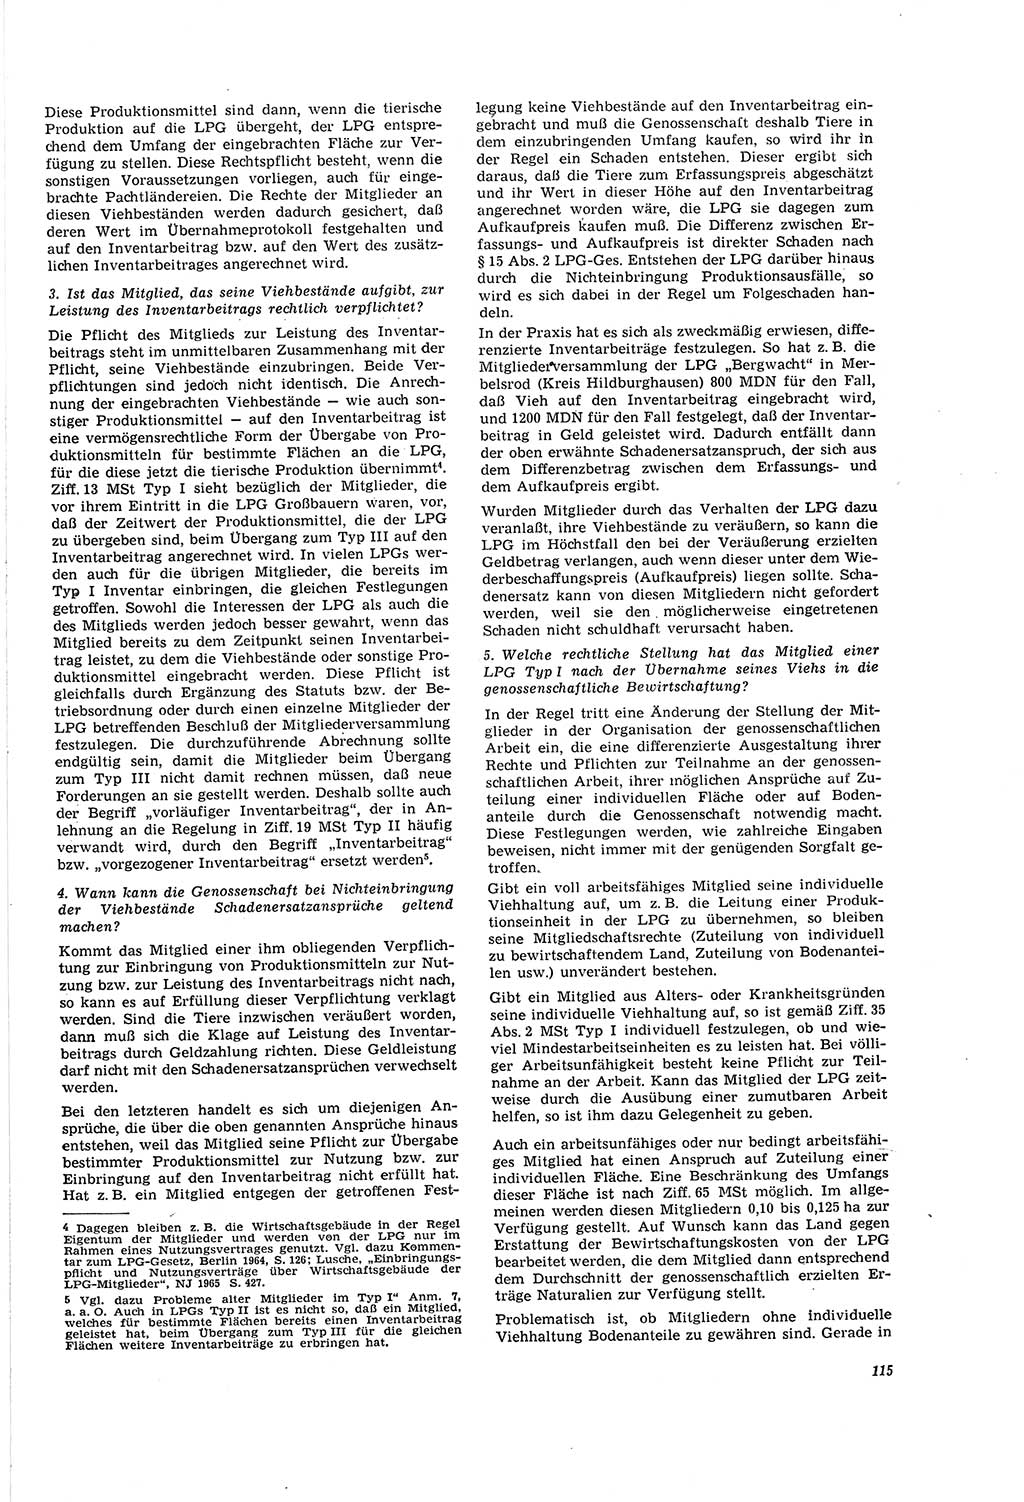 Neue Justiz (NJ), Zeitschrift für Recht und Rechtswissenschaft [Deutsche Demokratische Republik (DDR)], 20. Jahrgang 1966, Seite 115 (NJ DDR 1966, S. 115)